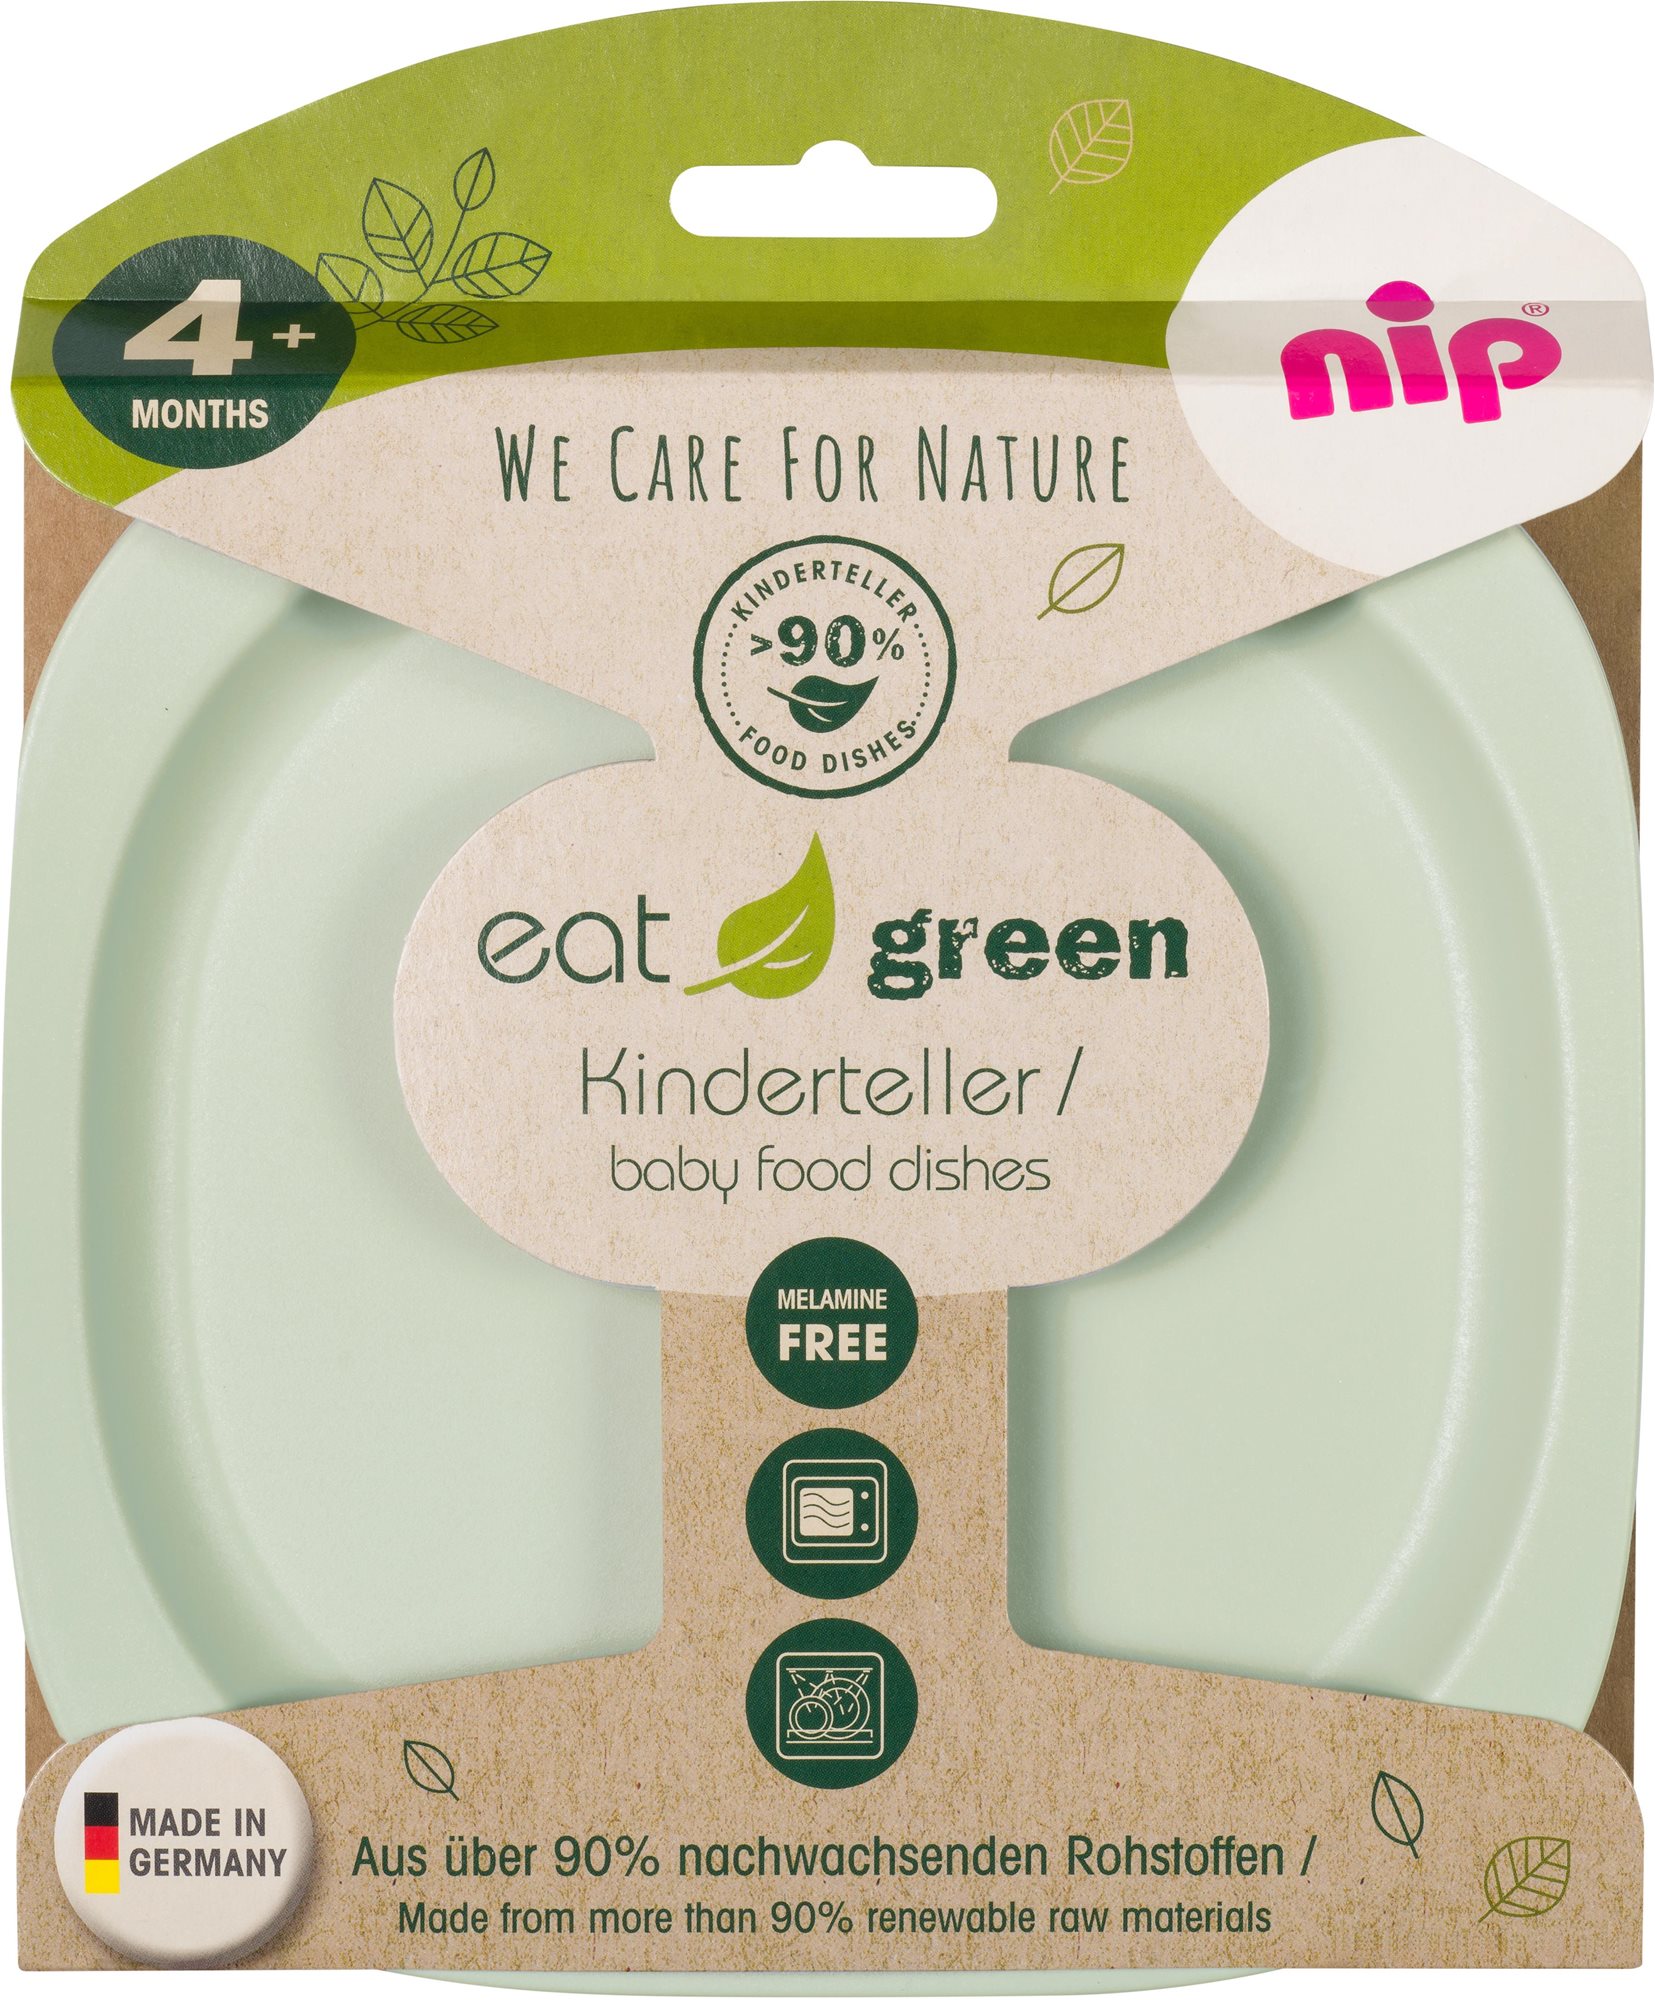 NIP Green Line 2 darab tányér Green/Light green